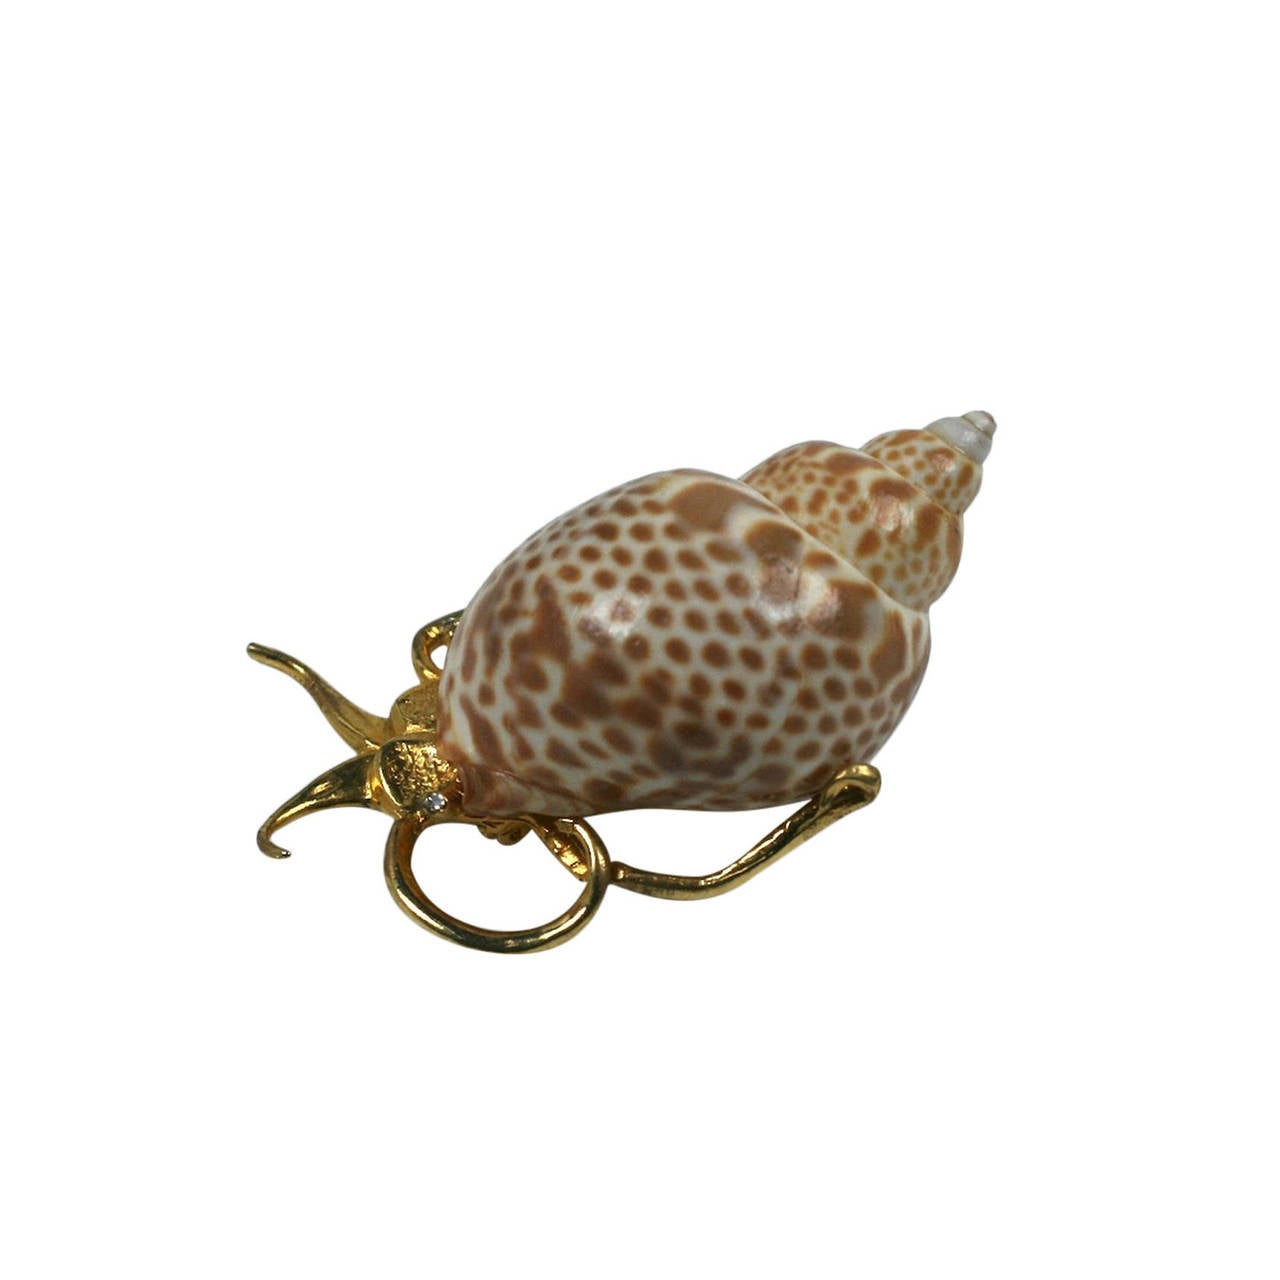 Kenneth Jay Lane's Snail brooch